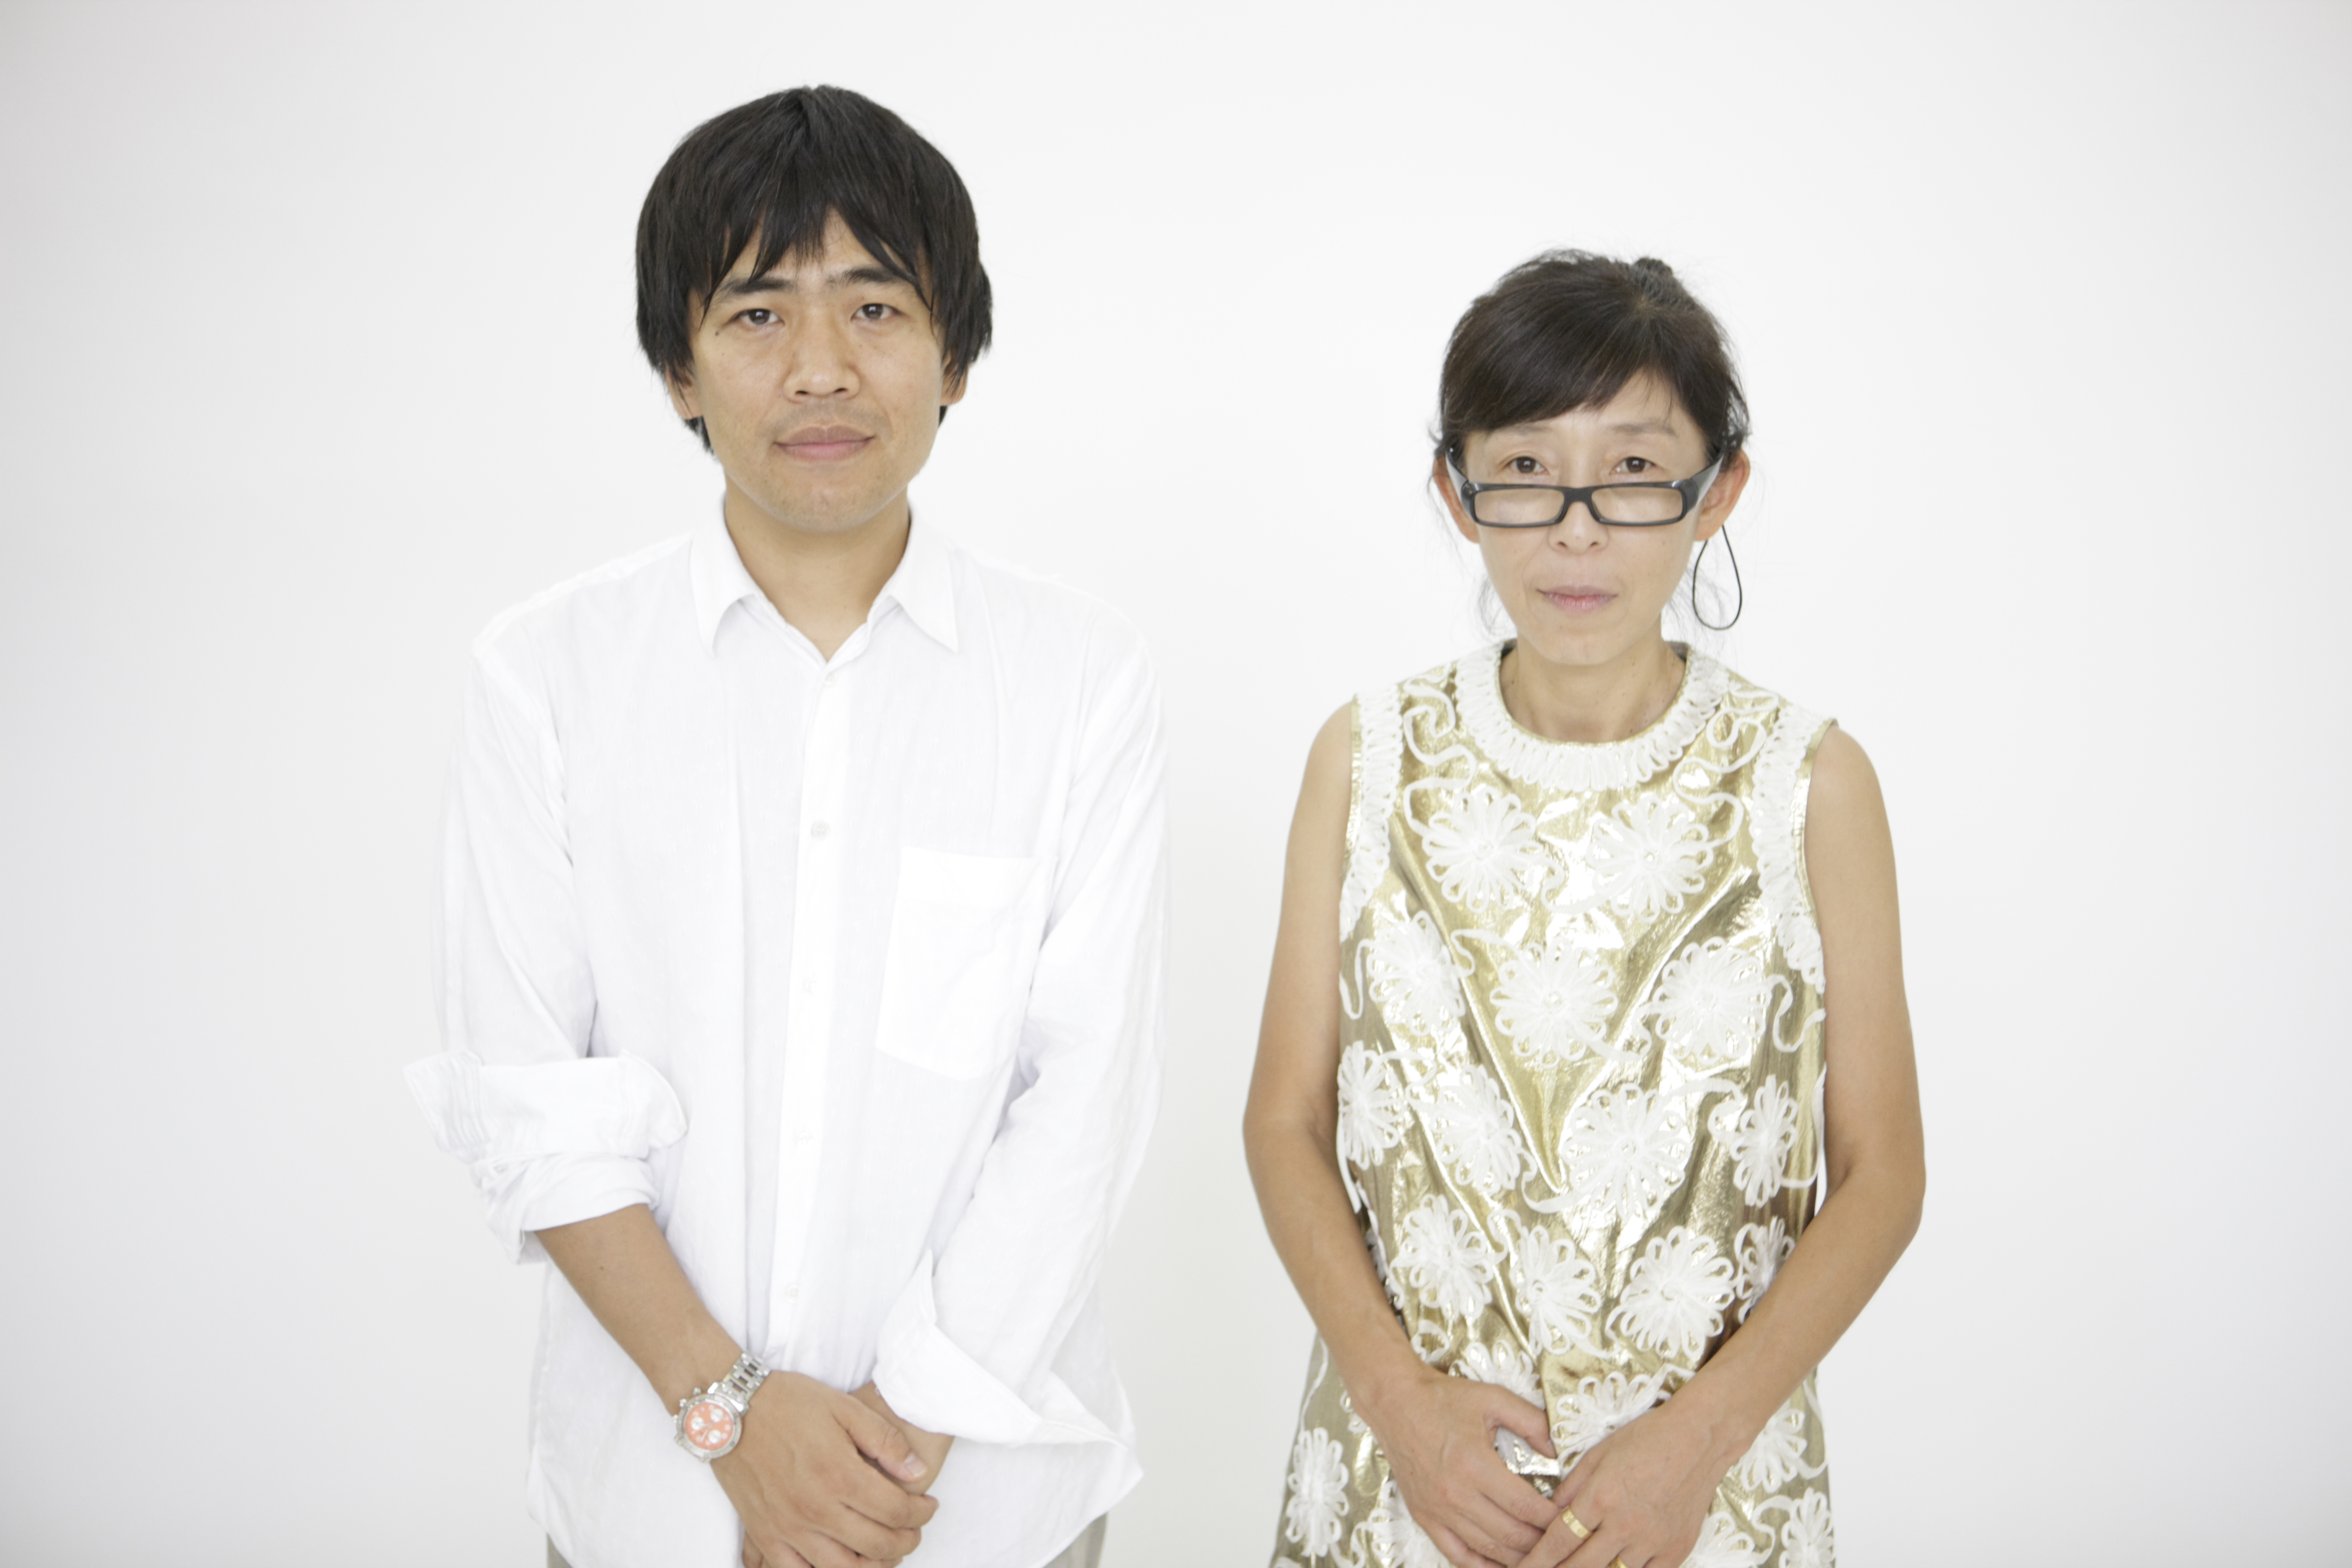 Kazuyo Sejima and Ryue Nishizawa – 2010 Laureates of the Pritzker